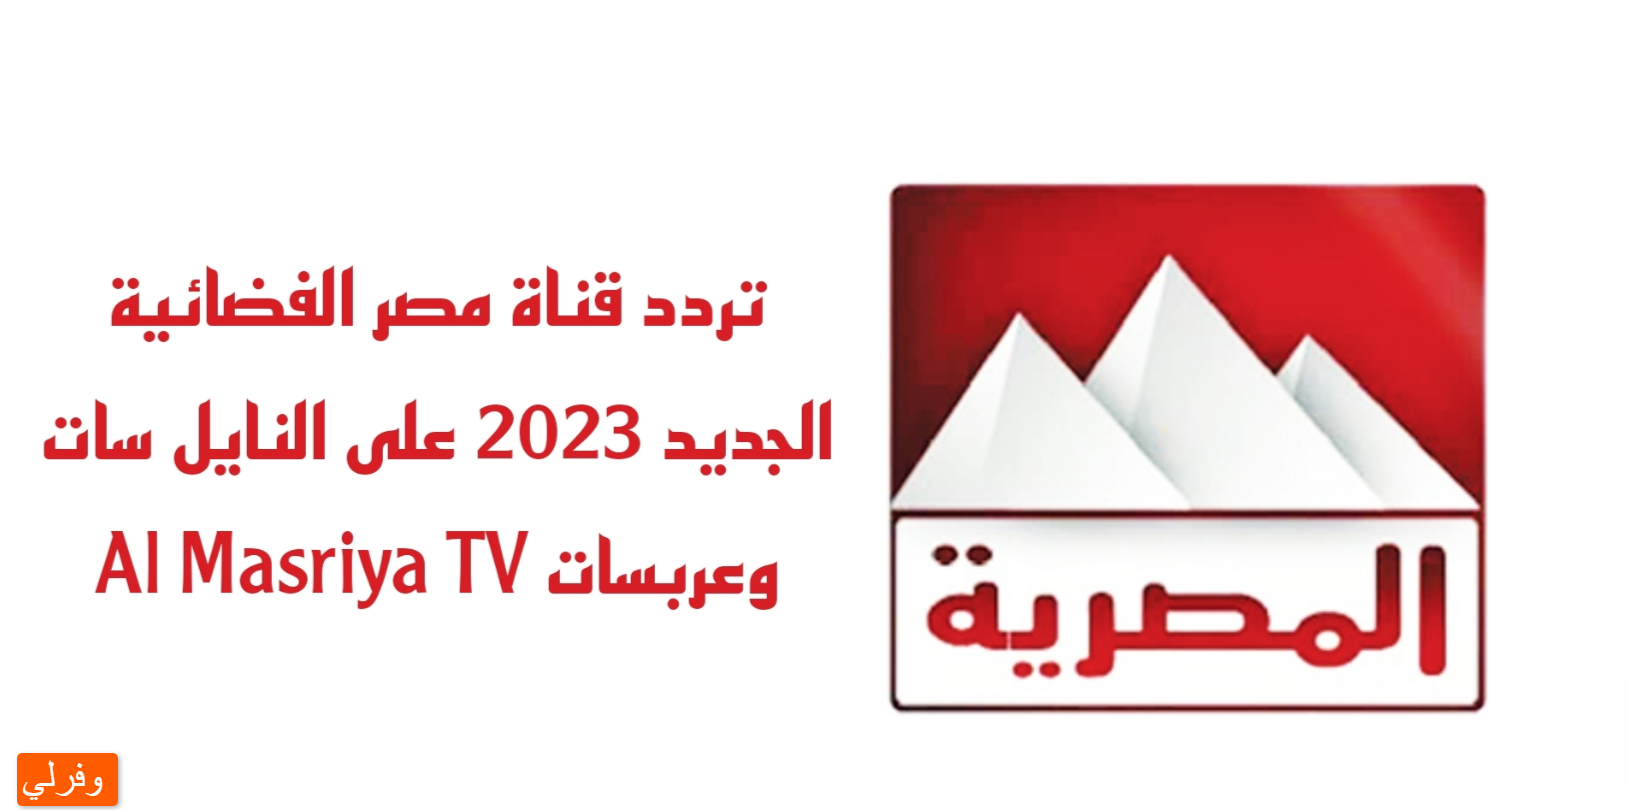 الآن تحديث ... تردد قناة المصرية الجديد 2023 علي النايل سات وعربسات Al Masriya TV